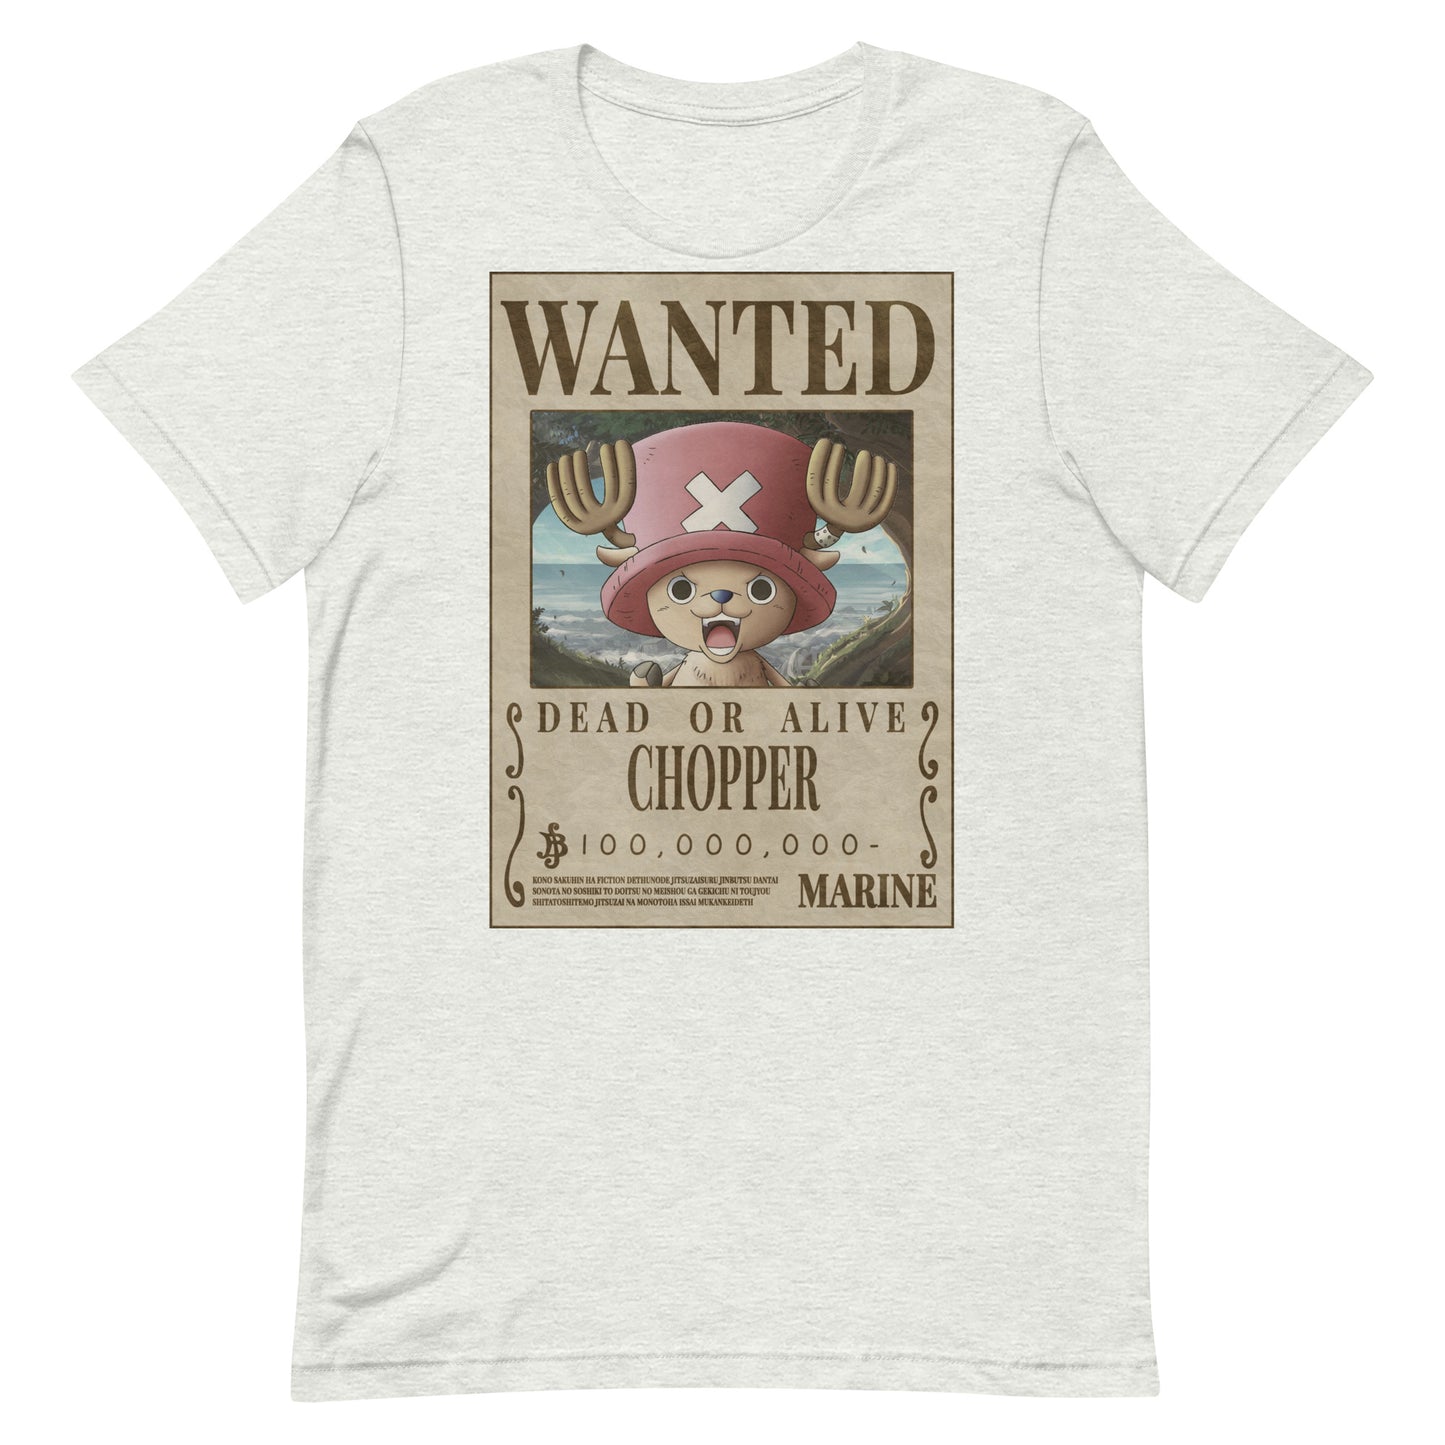 Chopper Wanted Poster T Shirt